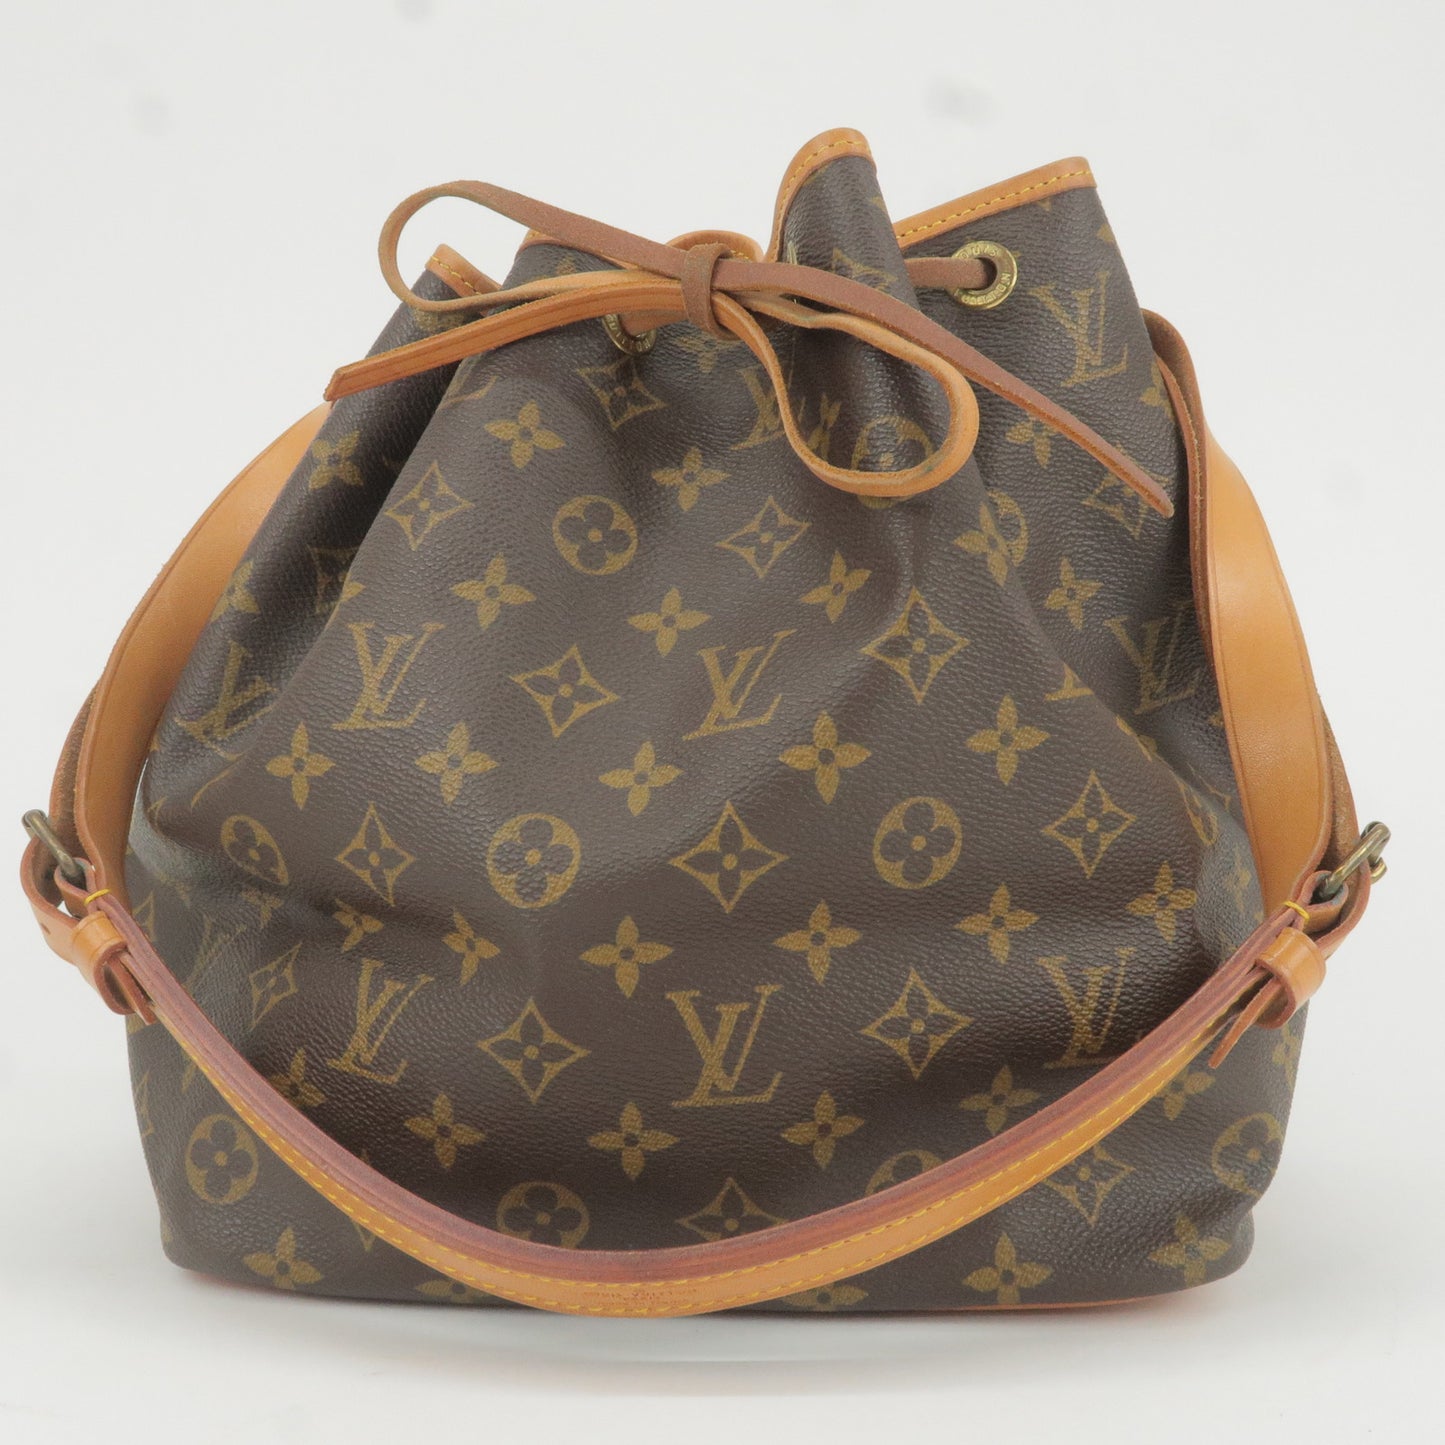 Louis Vuitton, Bags, Authentic Louis Vuitton Jeanne Insert Only Zip Pouch  Wallet